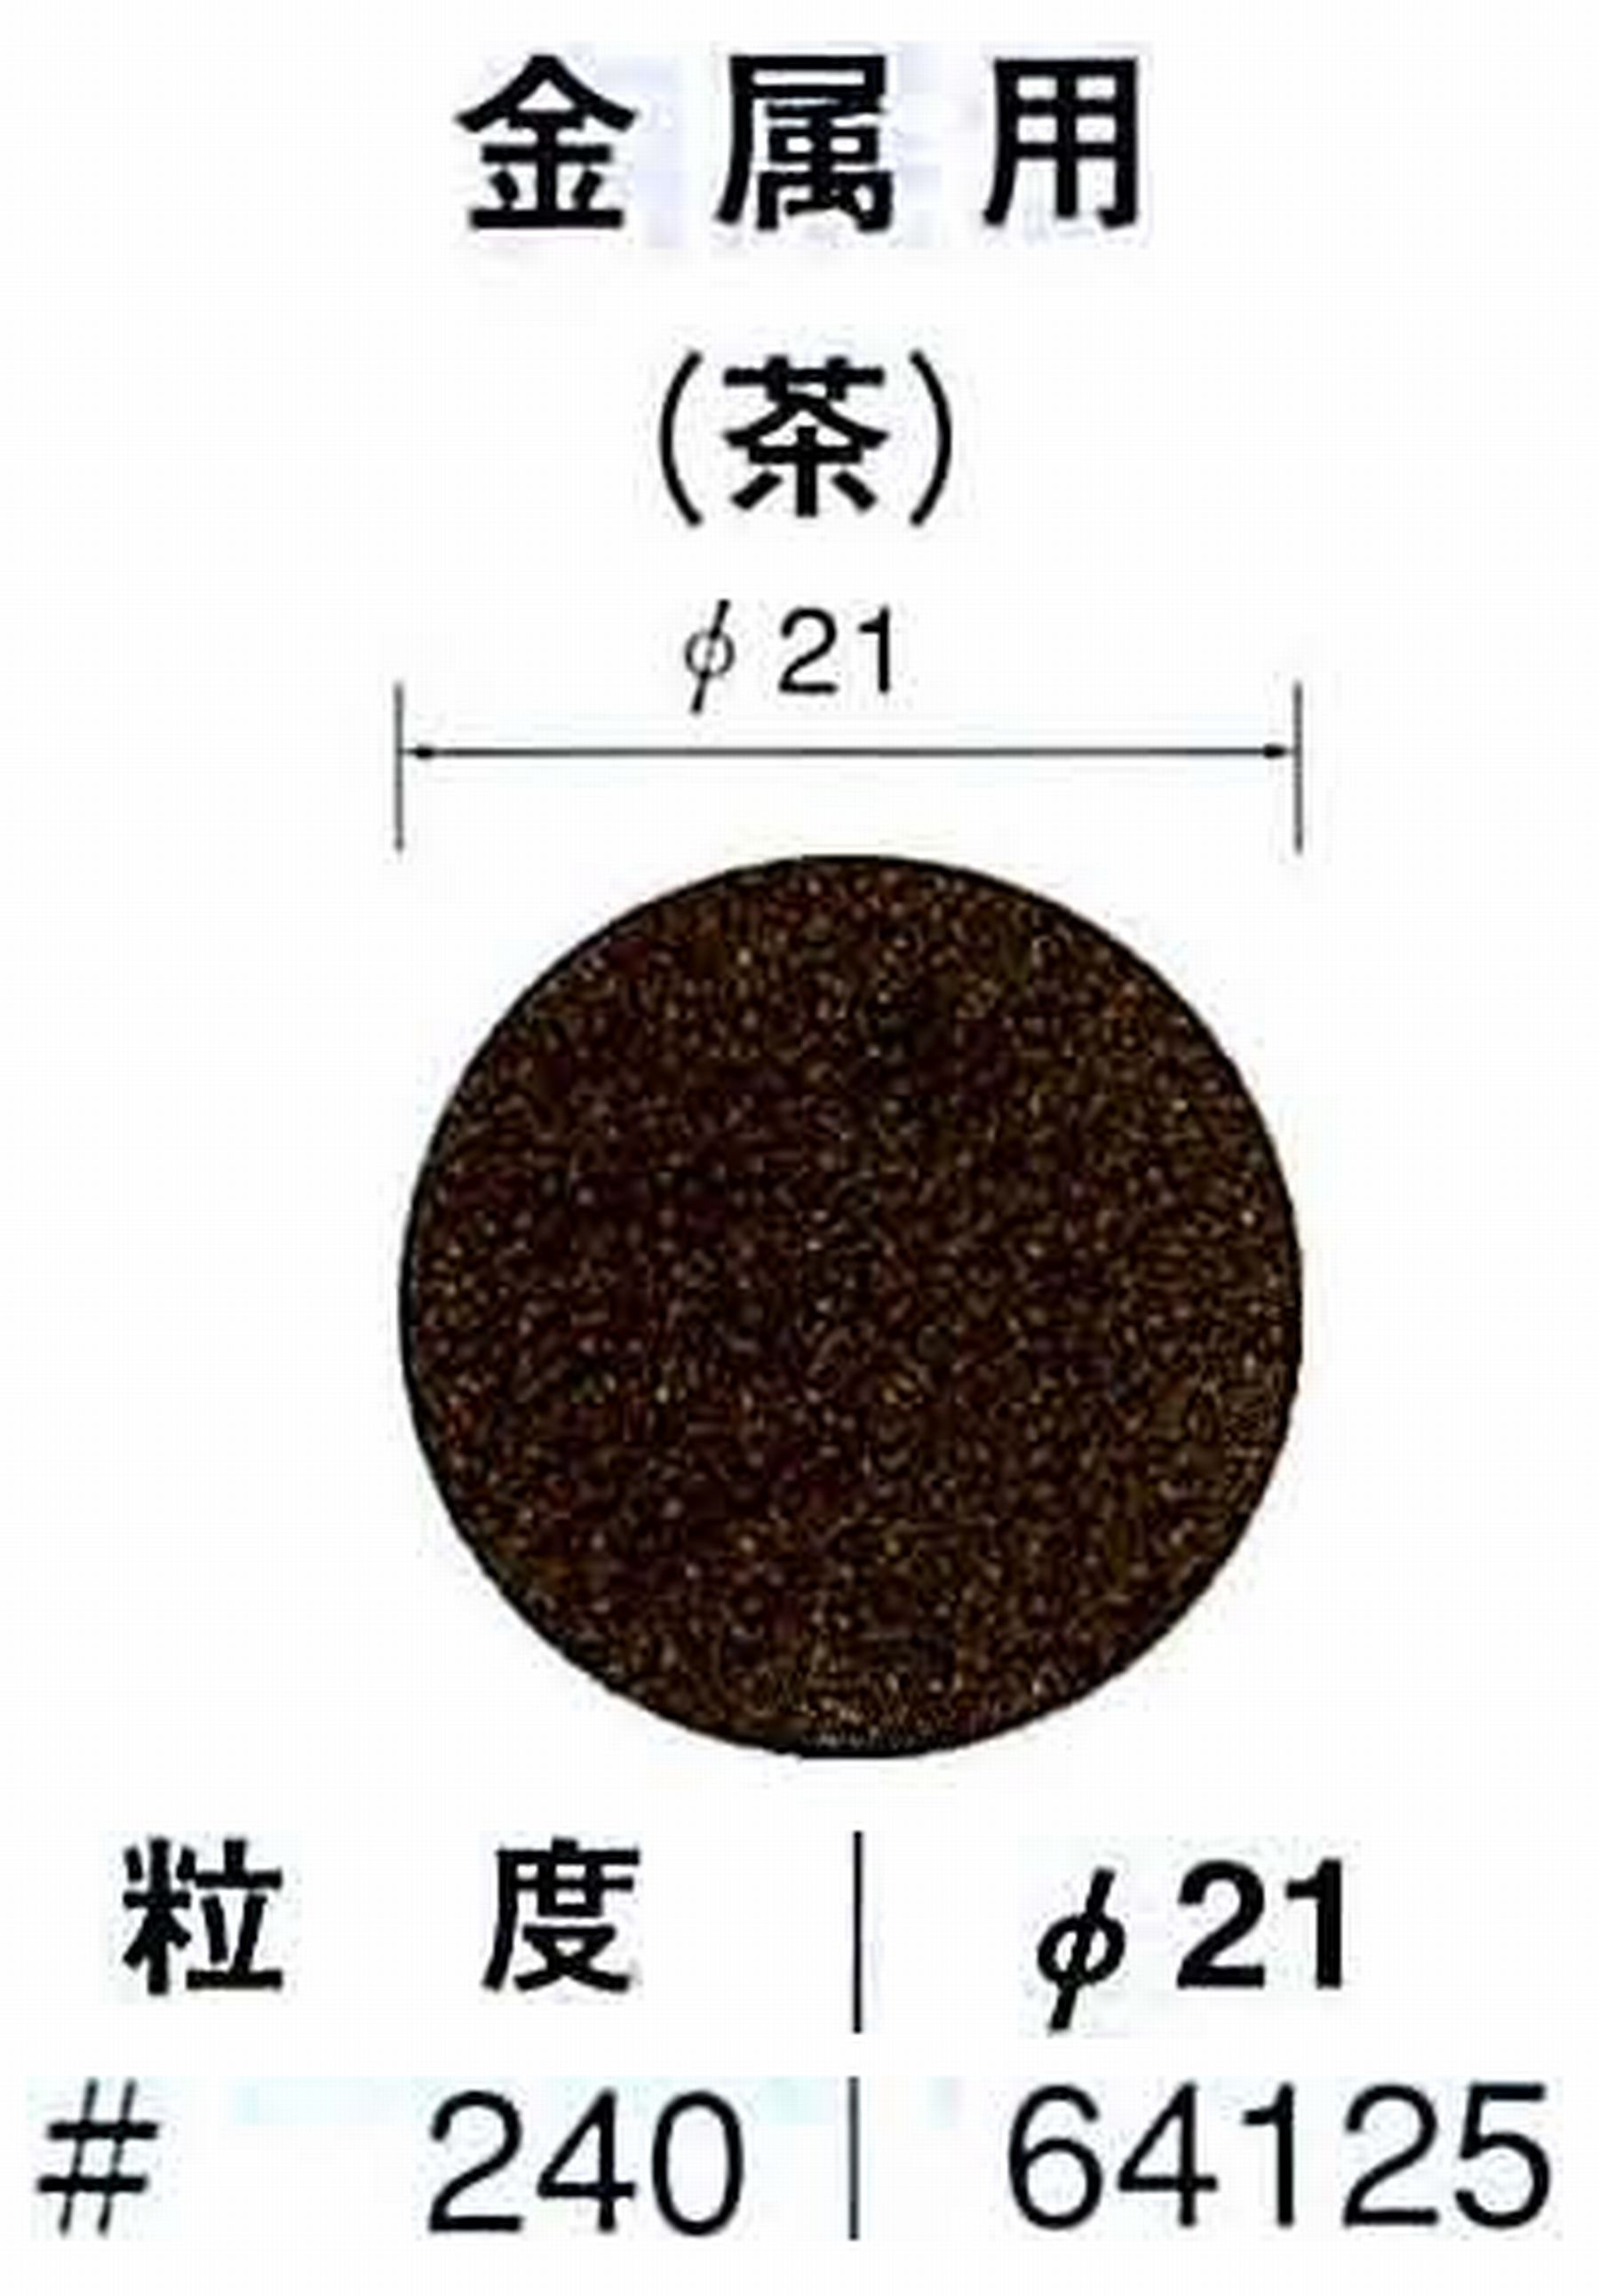 ナカニシ/NAKANISHI アングルグラインダ(電動・エアー) アングルアタッチメント専用工具 サンドペーパーディスク(布基材タイプ)裏面のり処理 64125